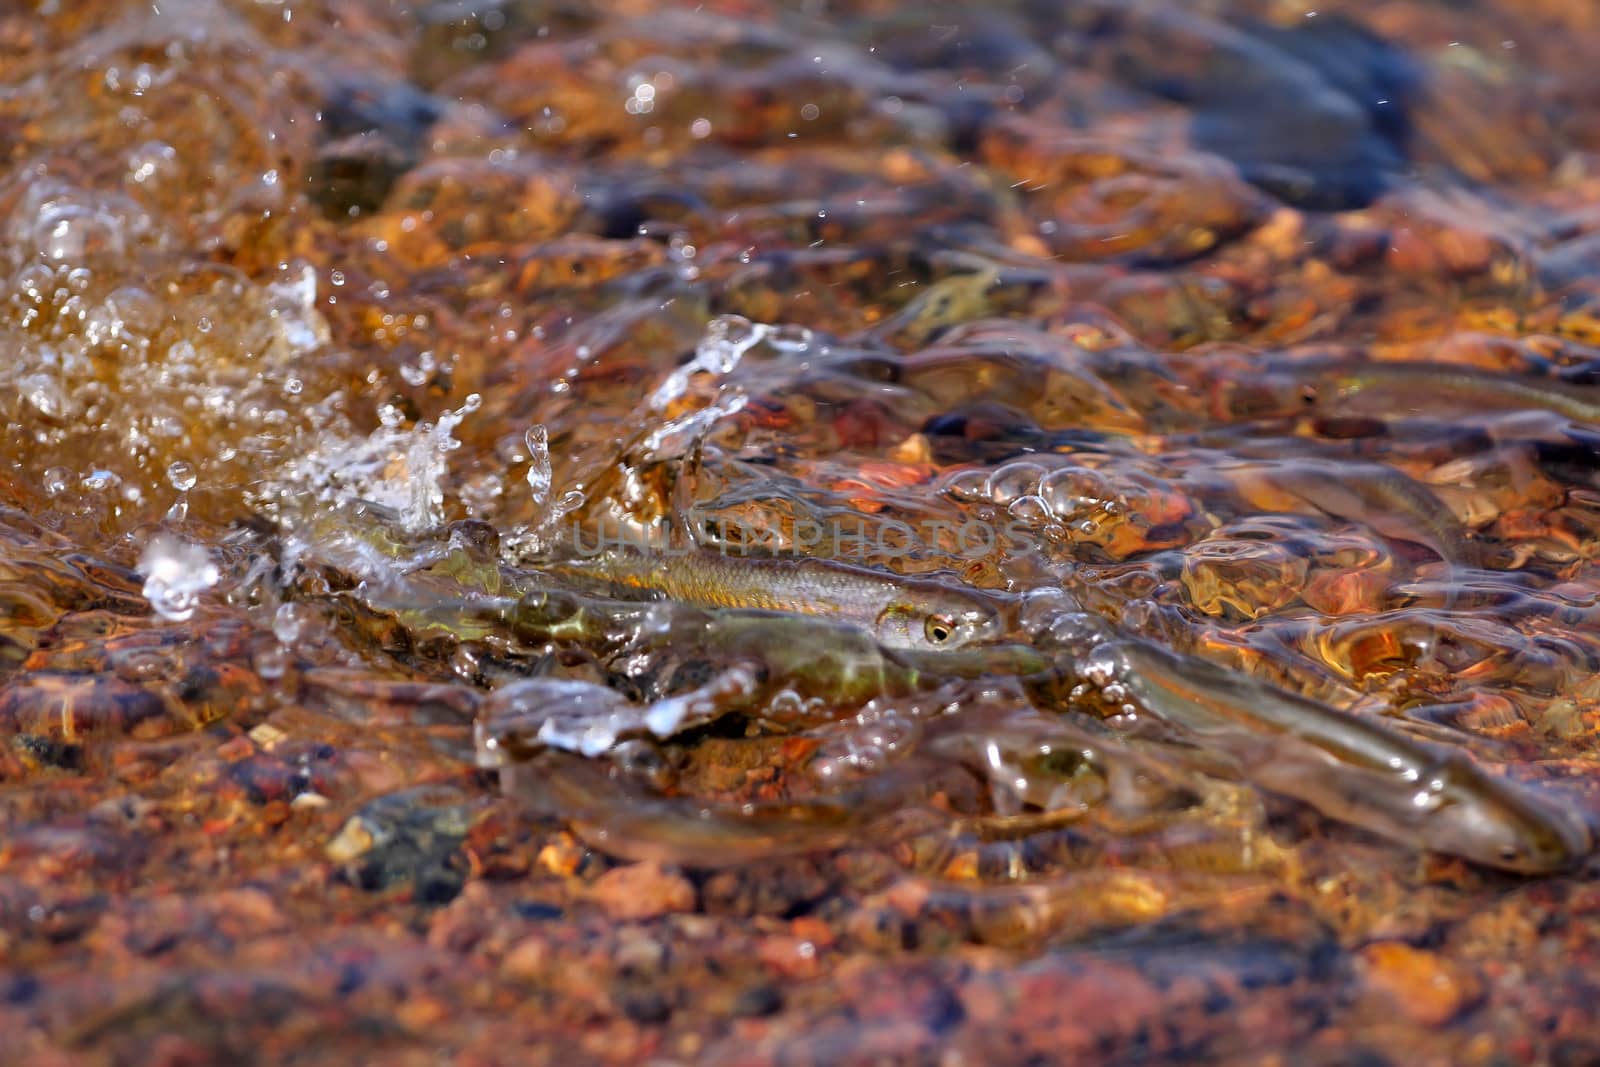 spawning season of bleaks  (Alburnus alburnus) on the Baltic Sea